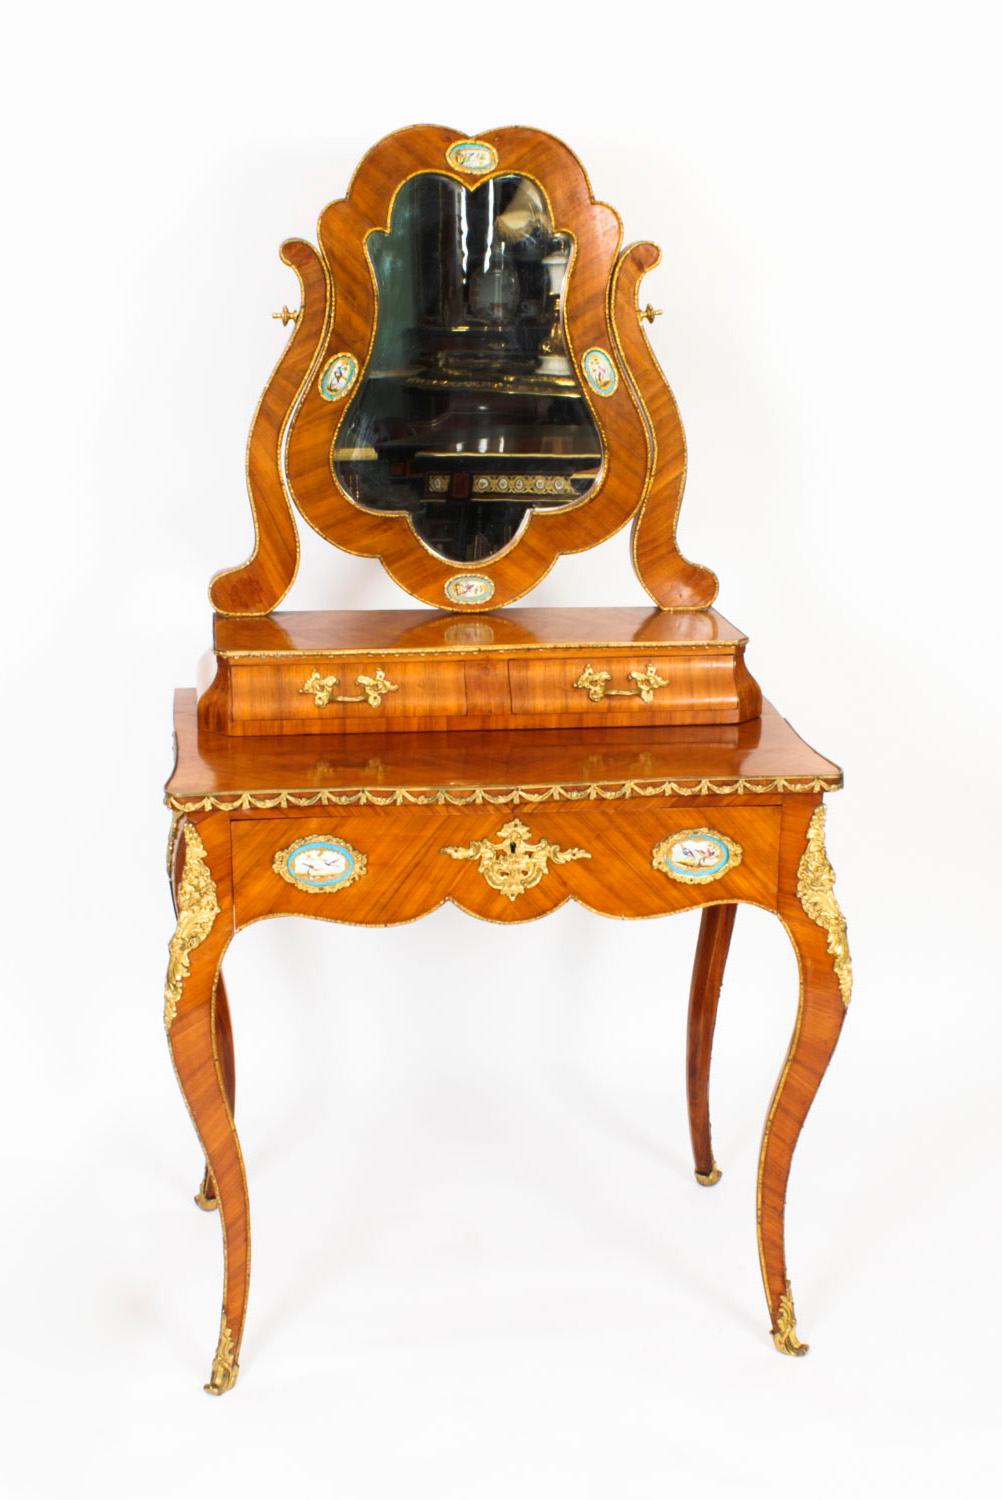 Il s'agit d'une très belle coiffeuse ancienne en bois de Boi, bronze doré et porcelaine de Sèvres datant d'environ 1860.
 
Elle a été fabriquée de main de maître à partir d'un magnifique bois de Violette rehaussé de bandes décoratives en bronze doré